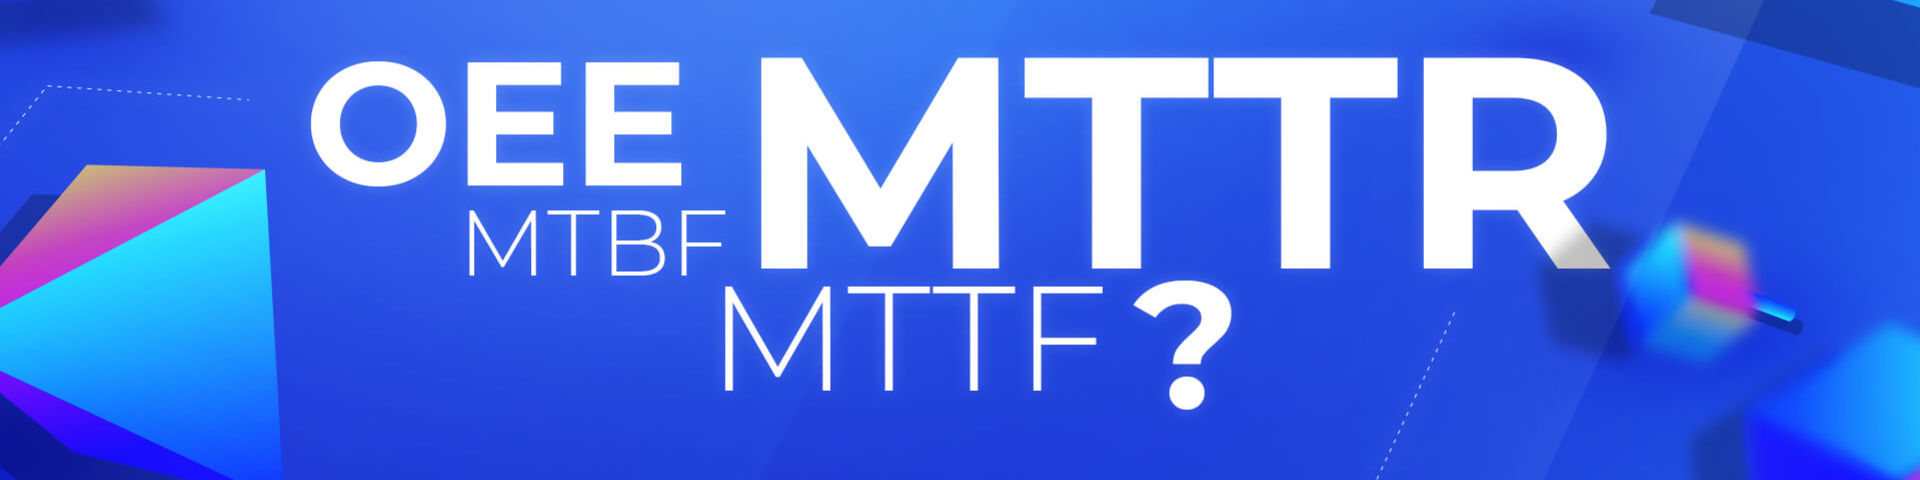 Kluczowe wskaźniki efektywności: MTTR, MTTF, MTBF, OEE - ściągawka